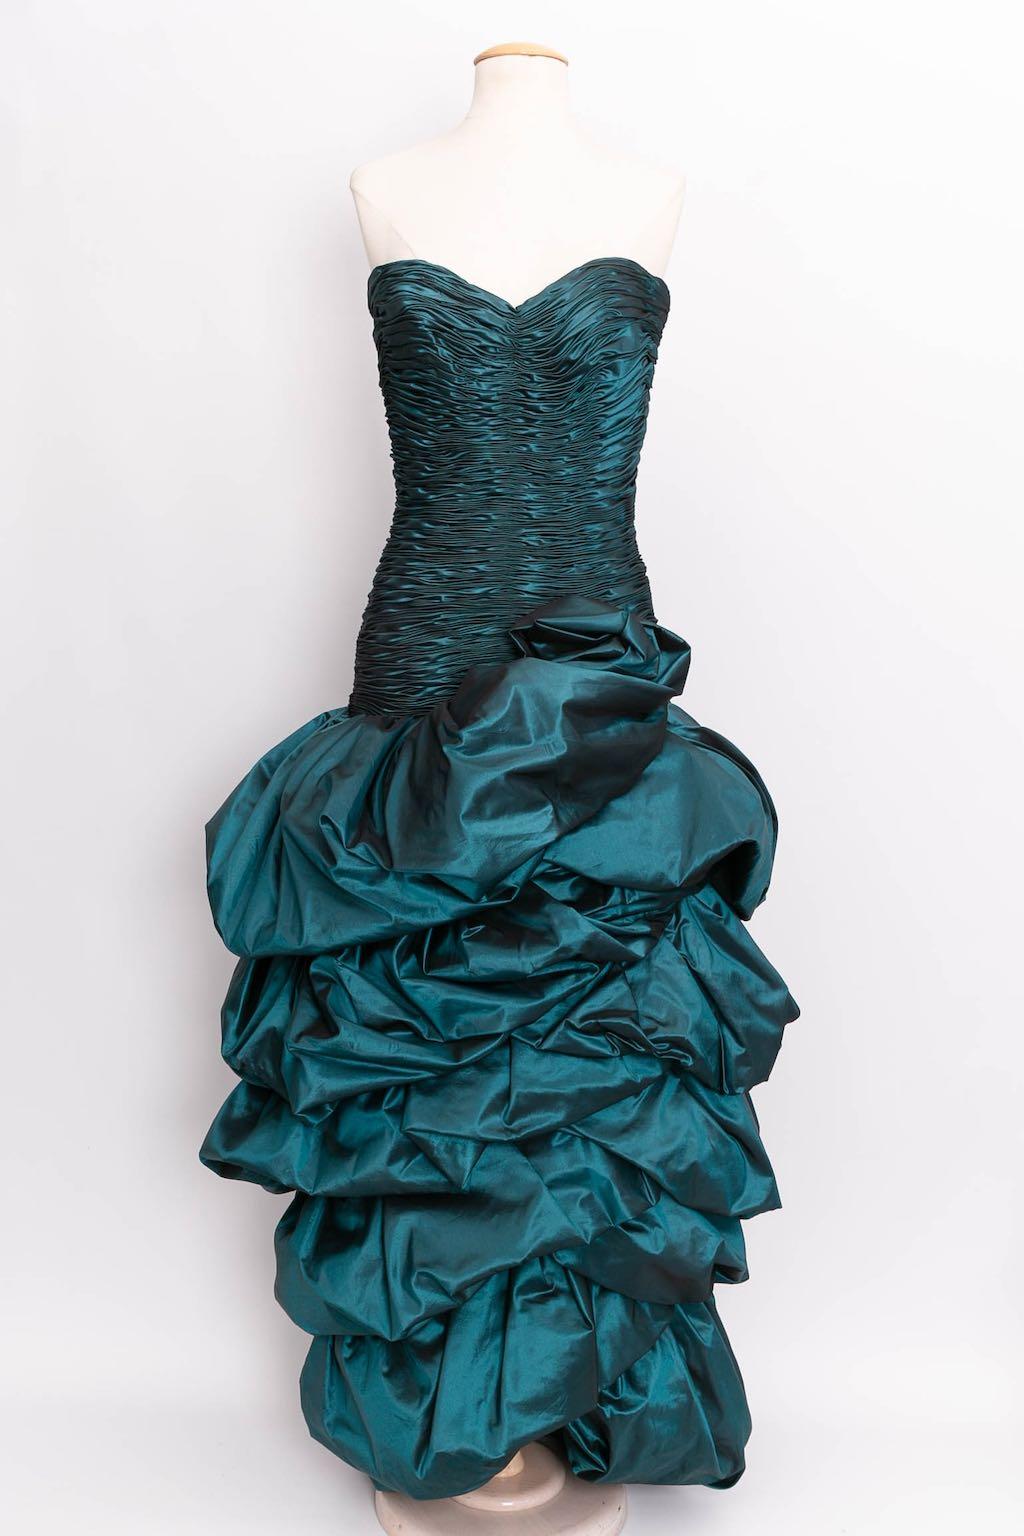 Loris Azzaro Haute Couture Bustier Dress, Size 36FR For Sale 1